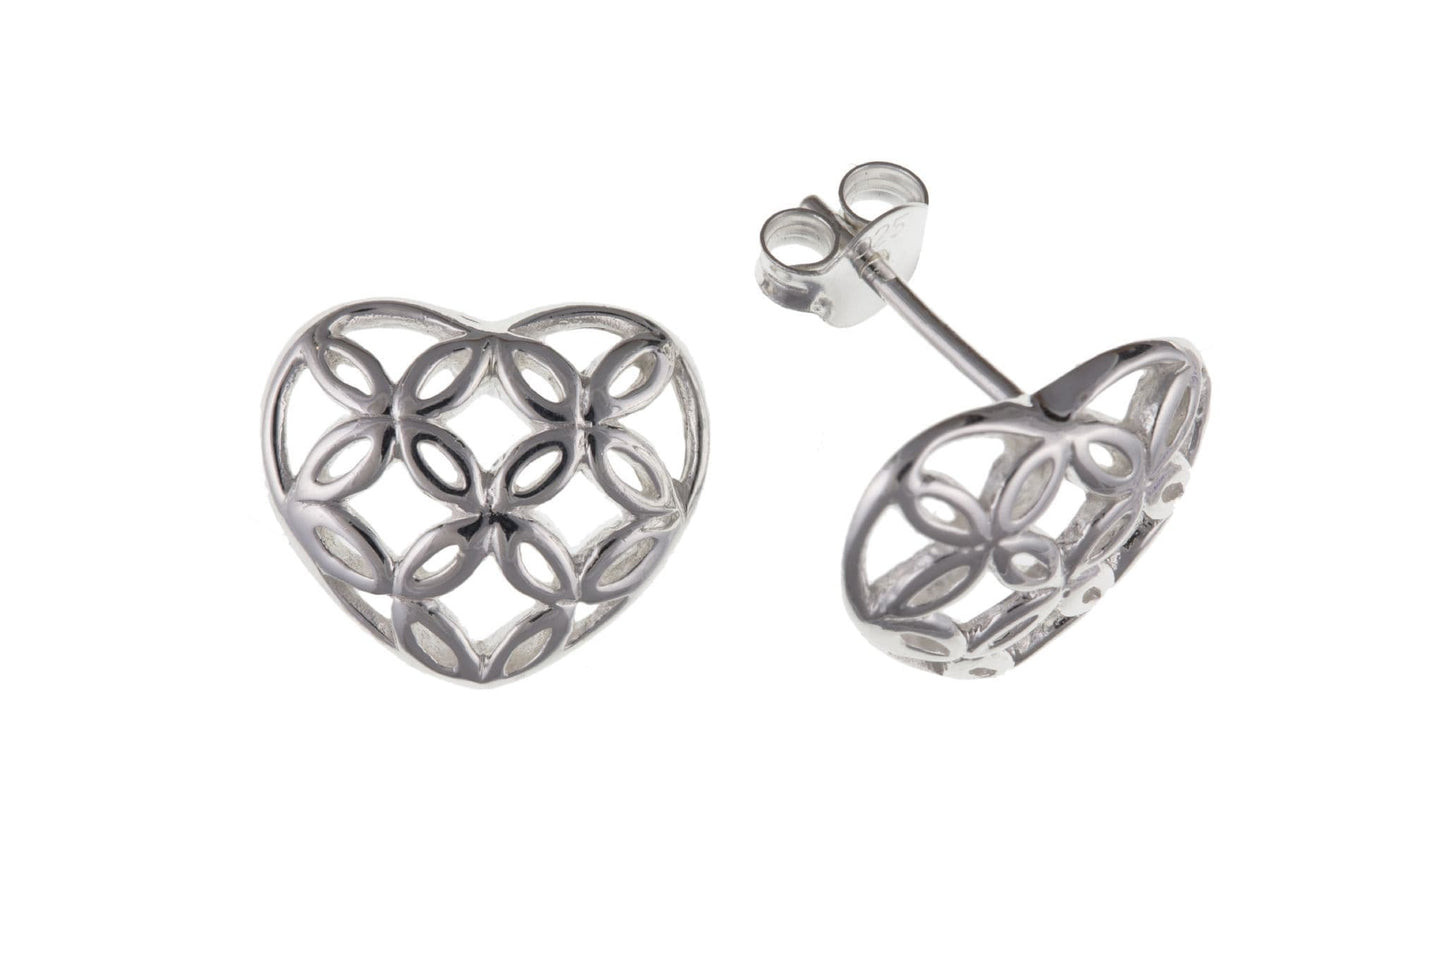 Heart shaped sterling silver stud earrings